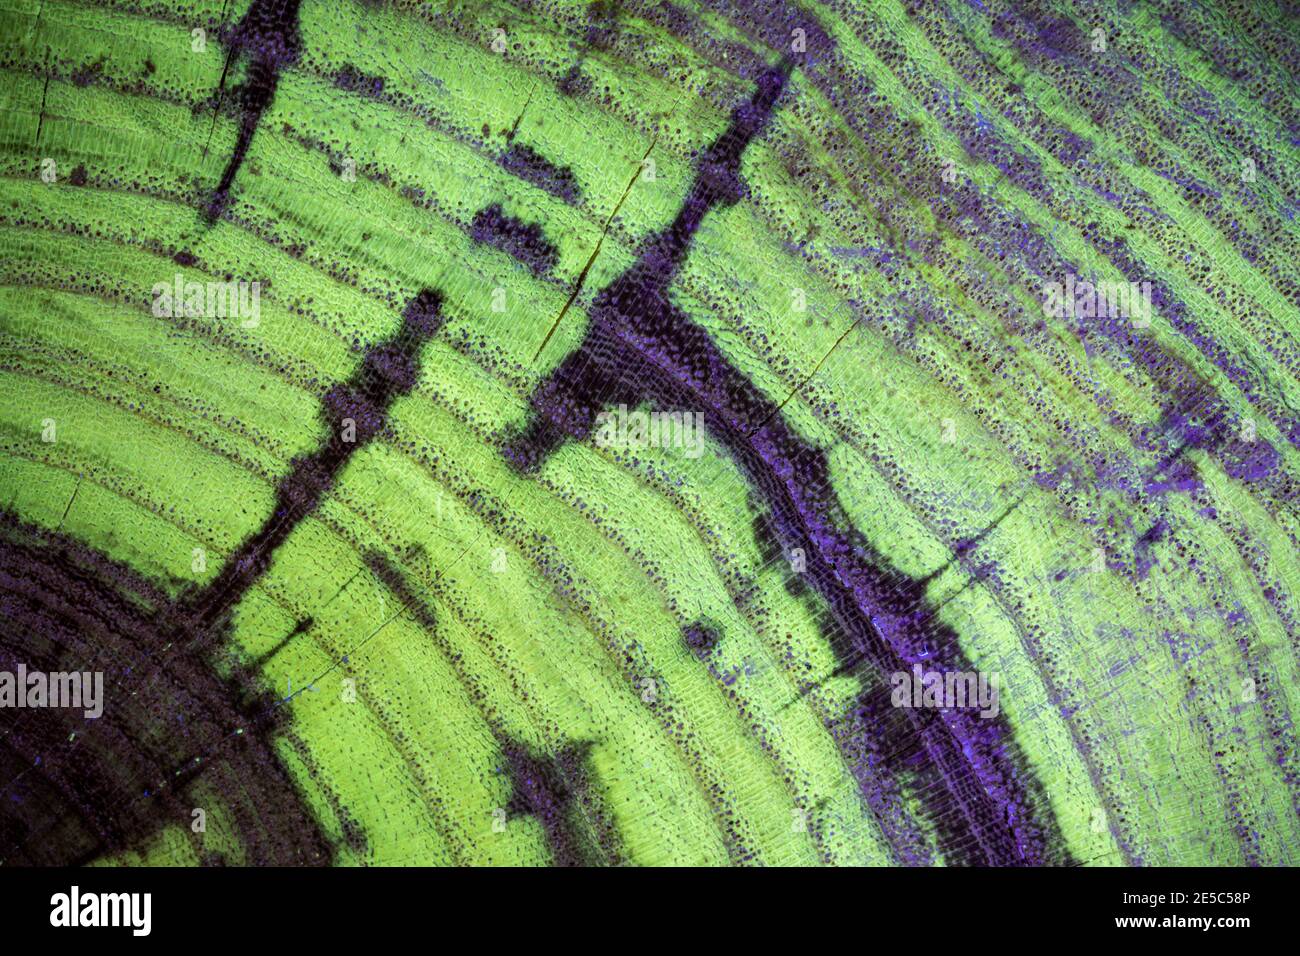 El grano de la madera negra de la langosta bajo la luz UV, mostrando la fluorescencia verde característica. Foto de stock